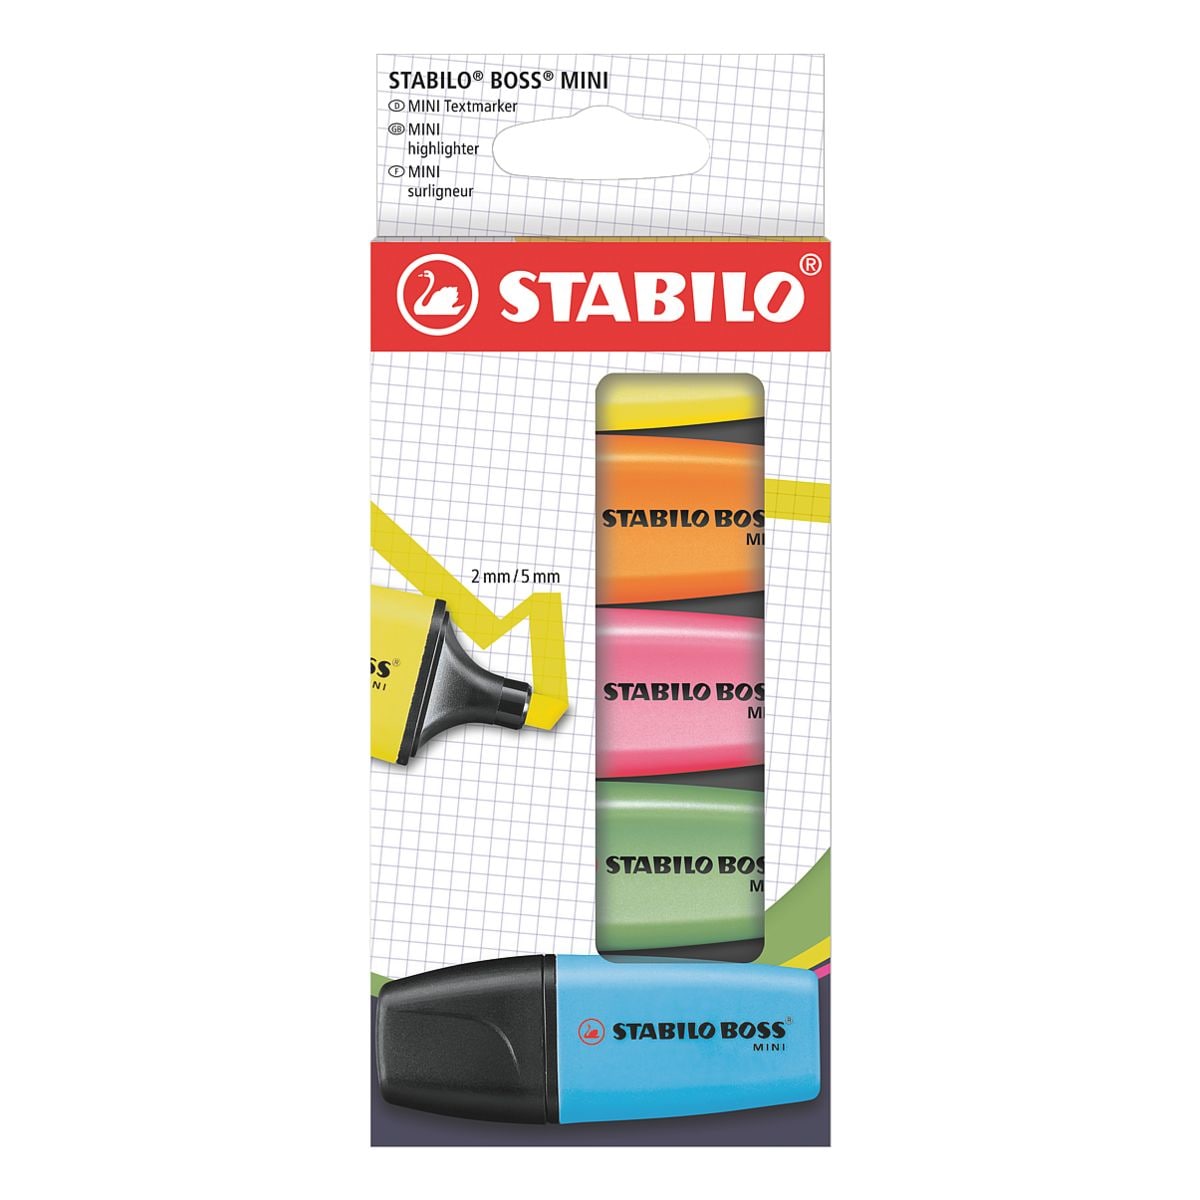 5x STABILO Markeerstift Boss® mini geel / oranje / groen / roze / blauw, schuine punt